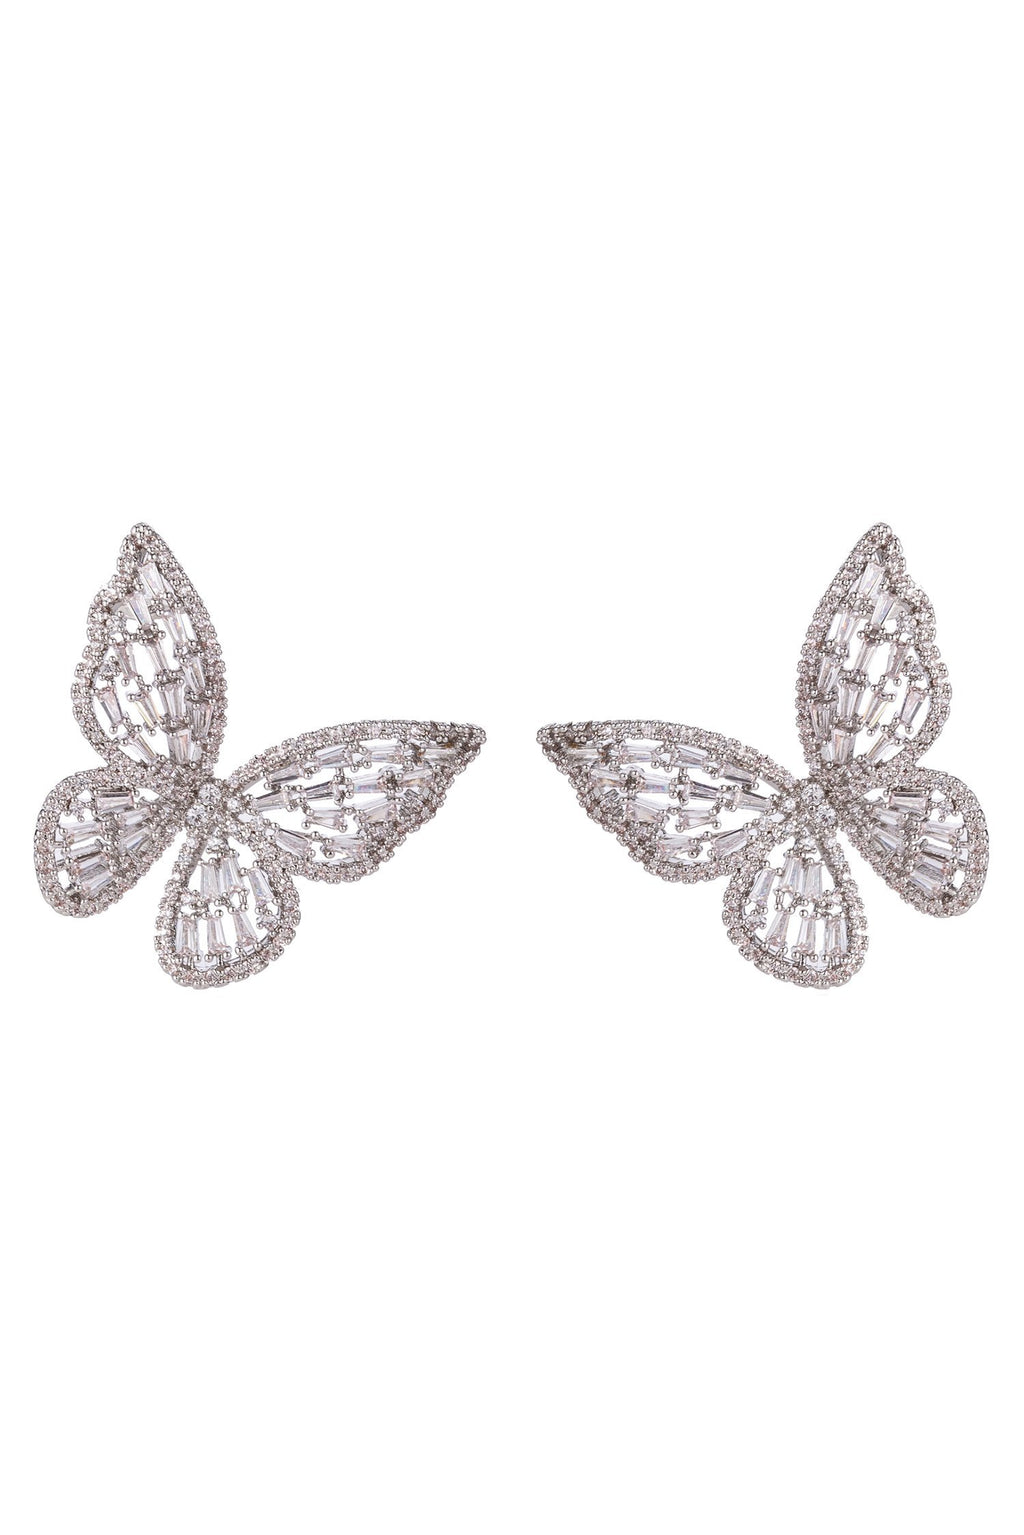 Mignonne Gavigan Luna Moth Earrings in Lilac – CoatTails